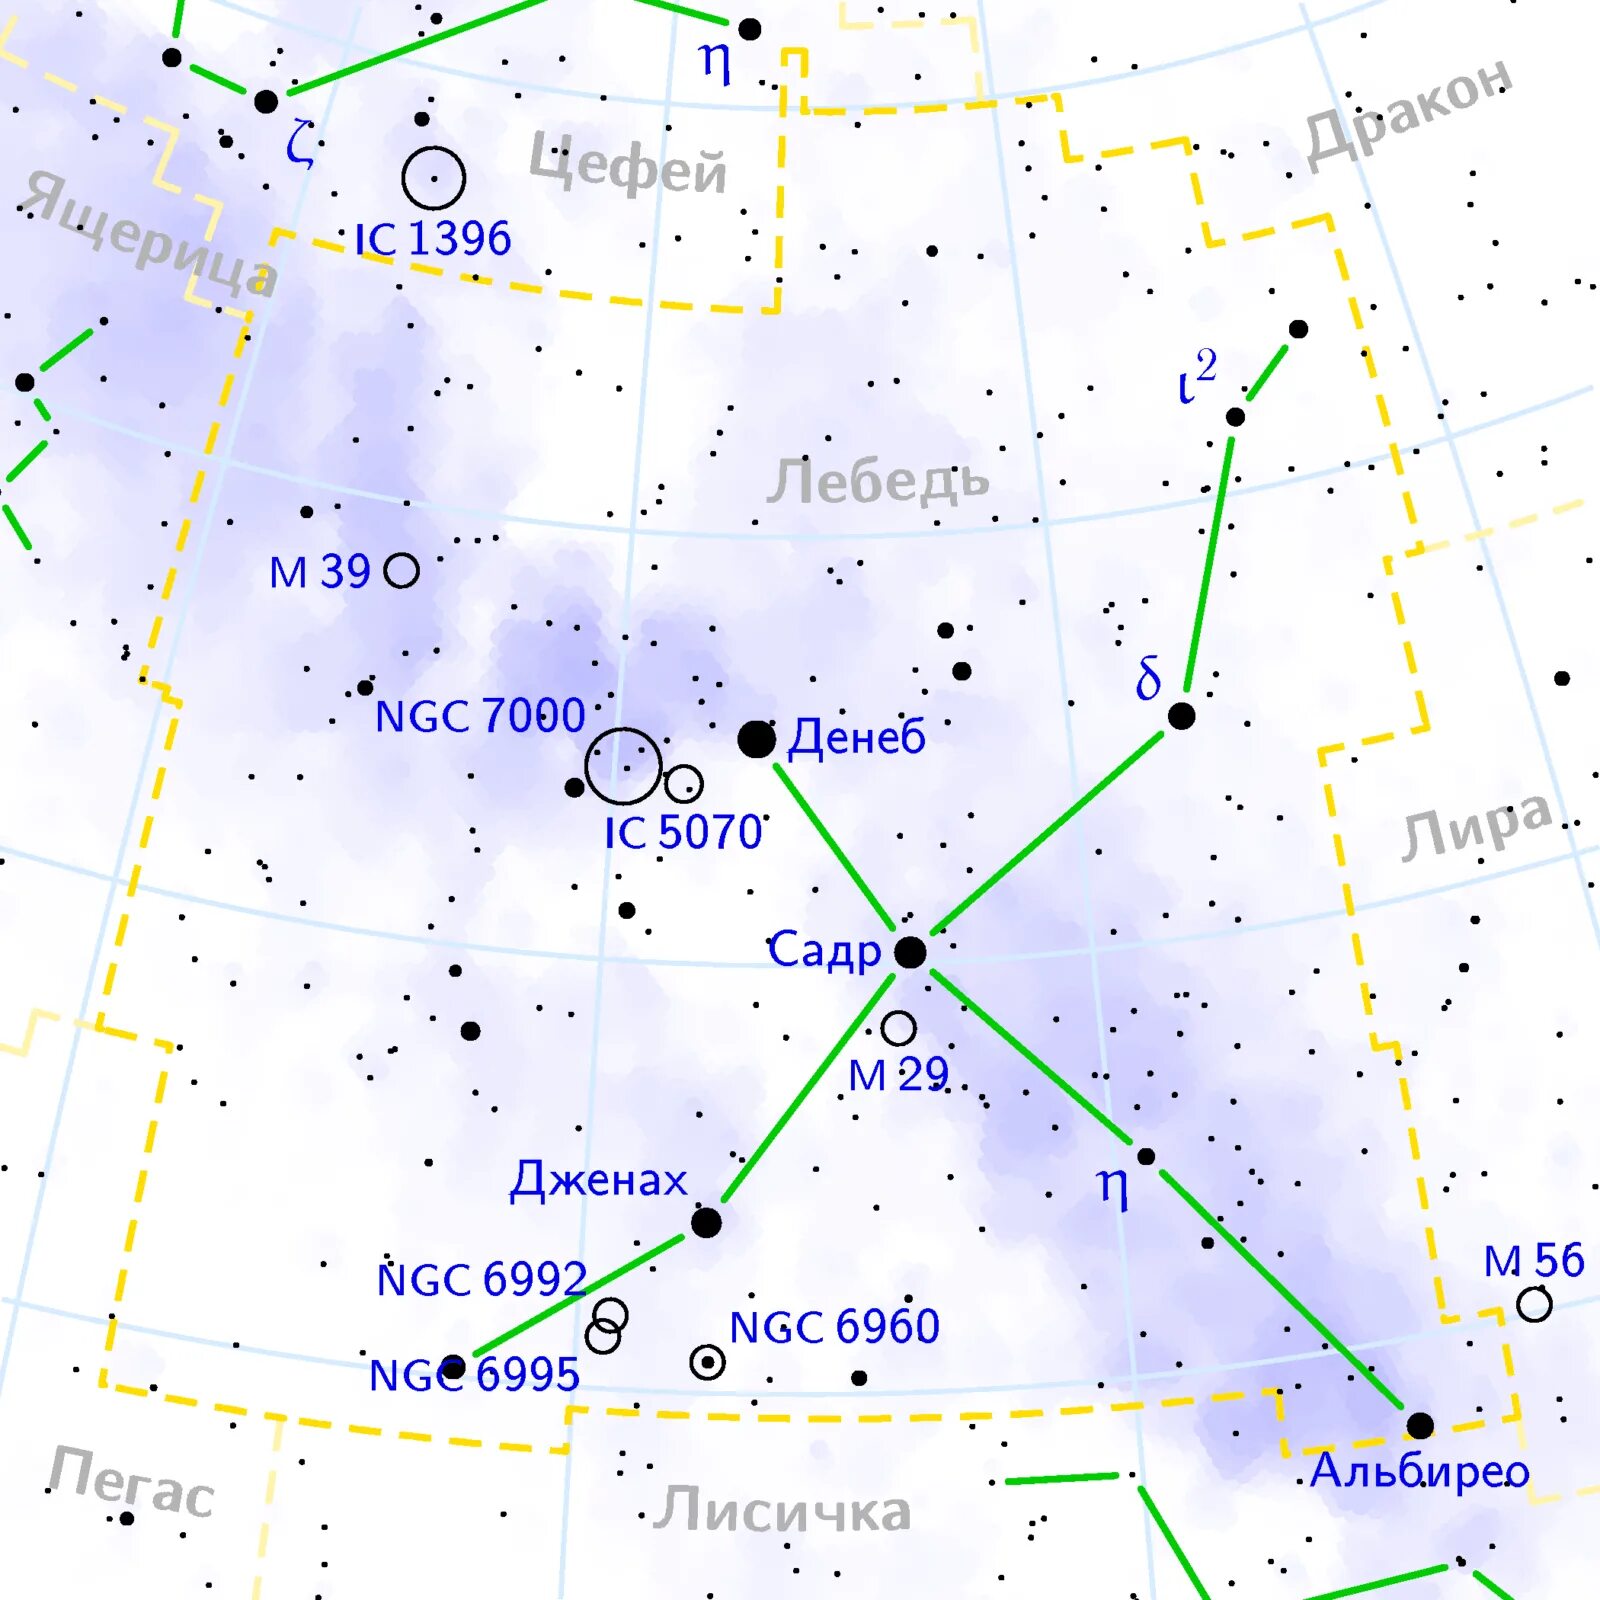 Название звезды на востоке. Схема созвездия лебедь самая яркая звезда. Созвездие лебедь схема с названиями звезд. Альбирео, (β лебедя)Albireo (β CYG). Созвездие лебедя на карте звездного неба.